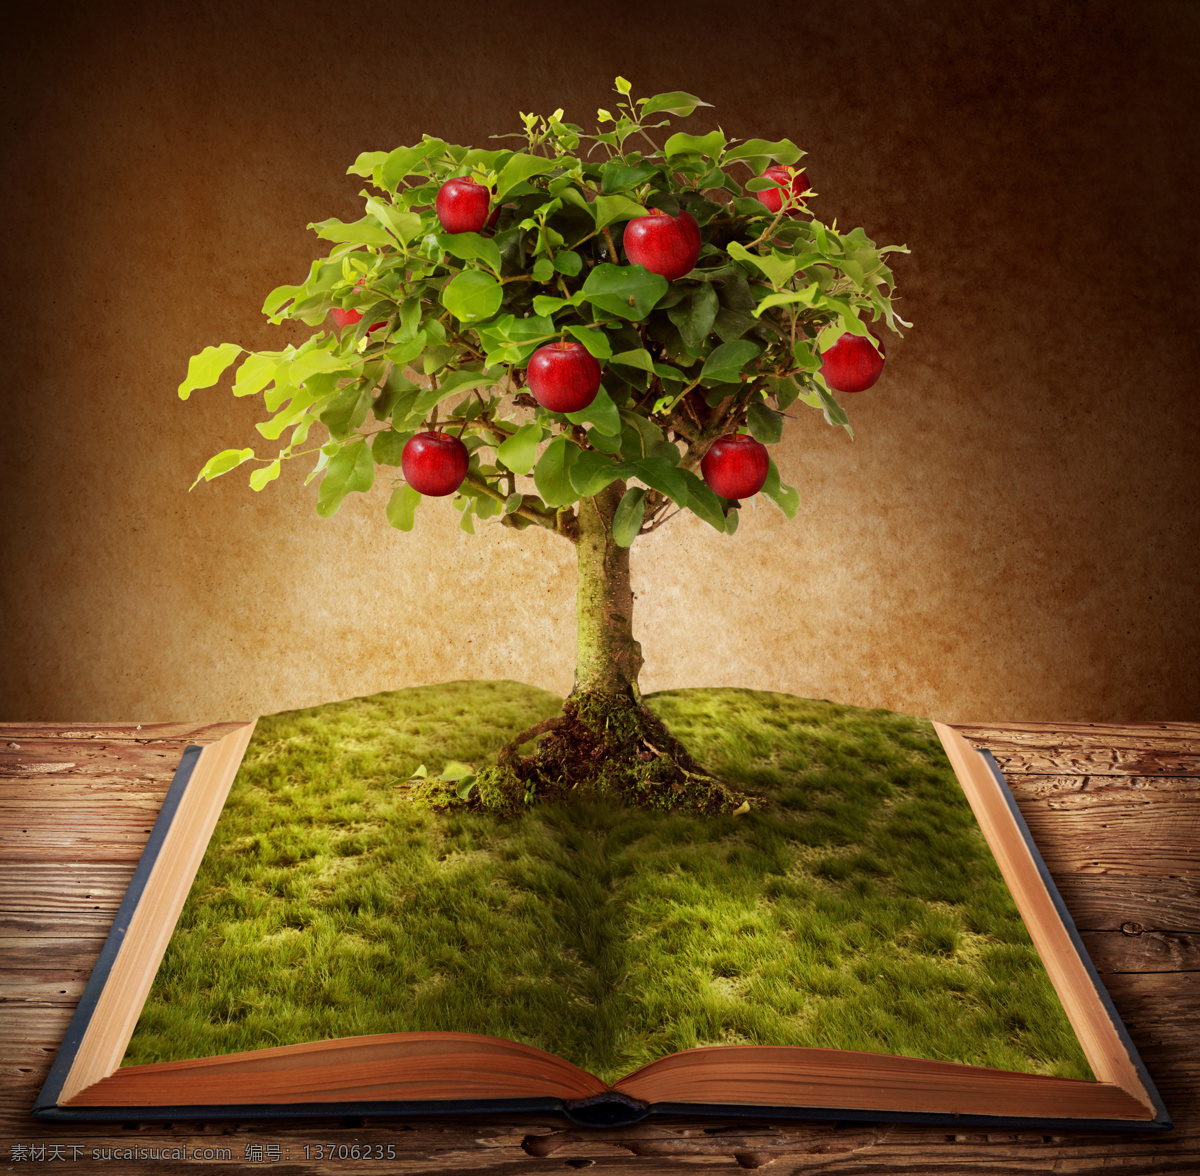 书本 苹果树 书籍 翻开的书 学习 知识 希望 树木 大树 草地 苹果 果树 收获 花草树木 生物世界